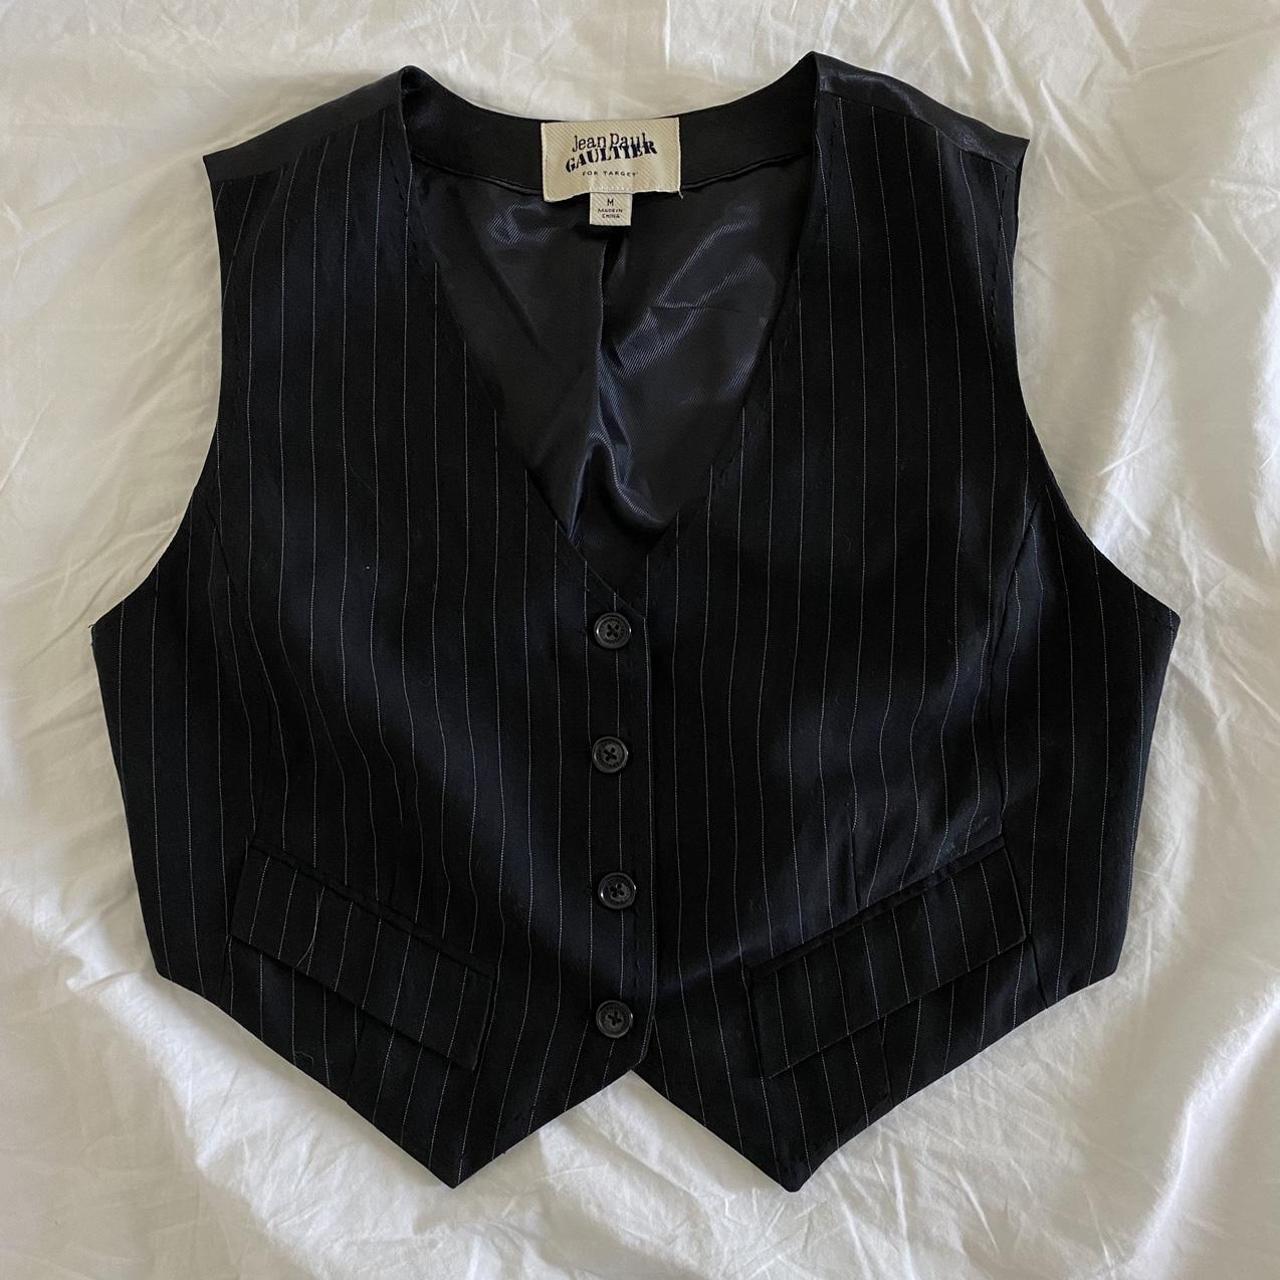 jean paul gaultier cropped pinstripe vest. has an... - Depop